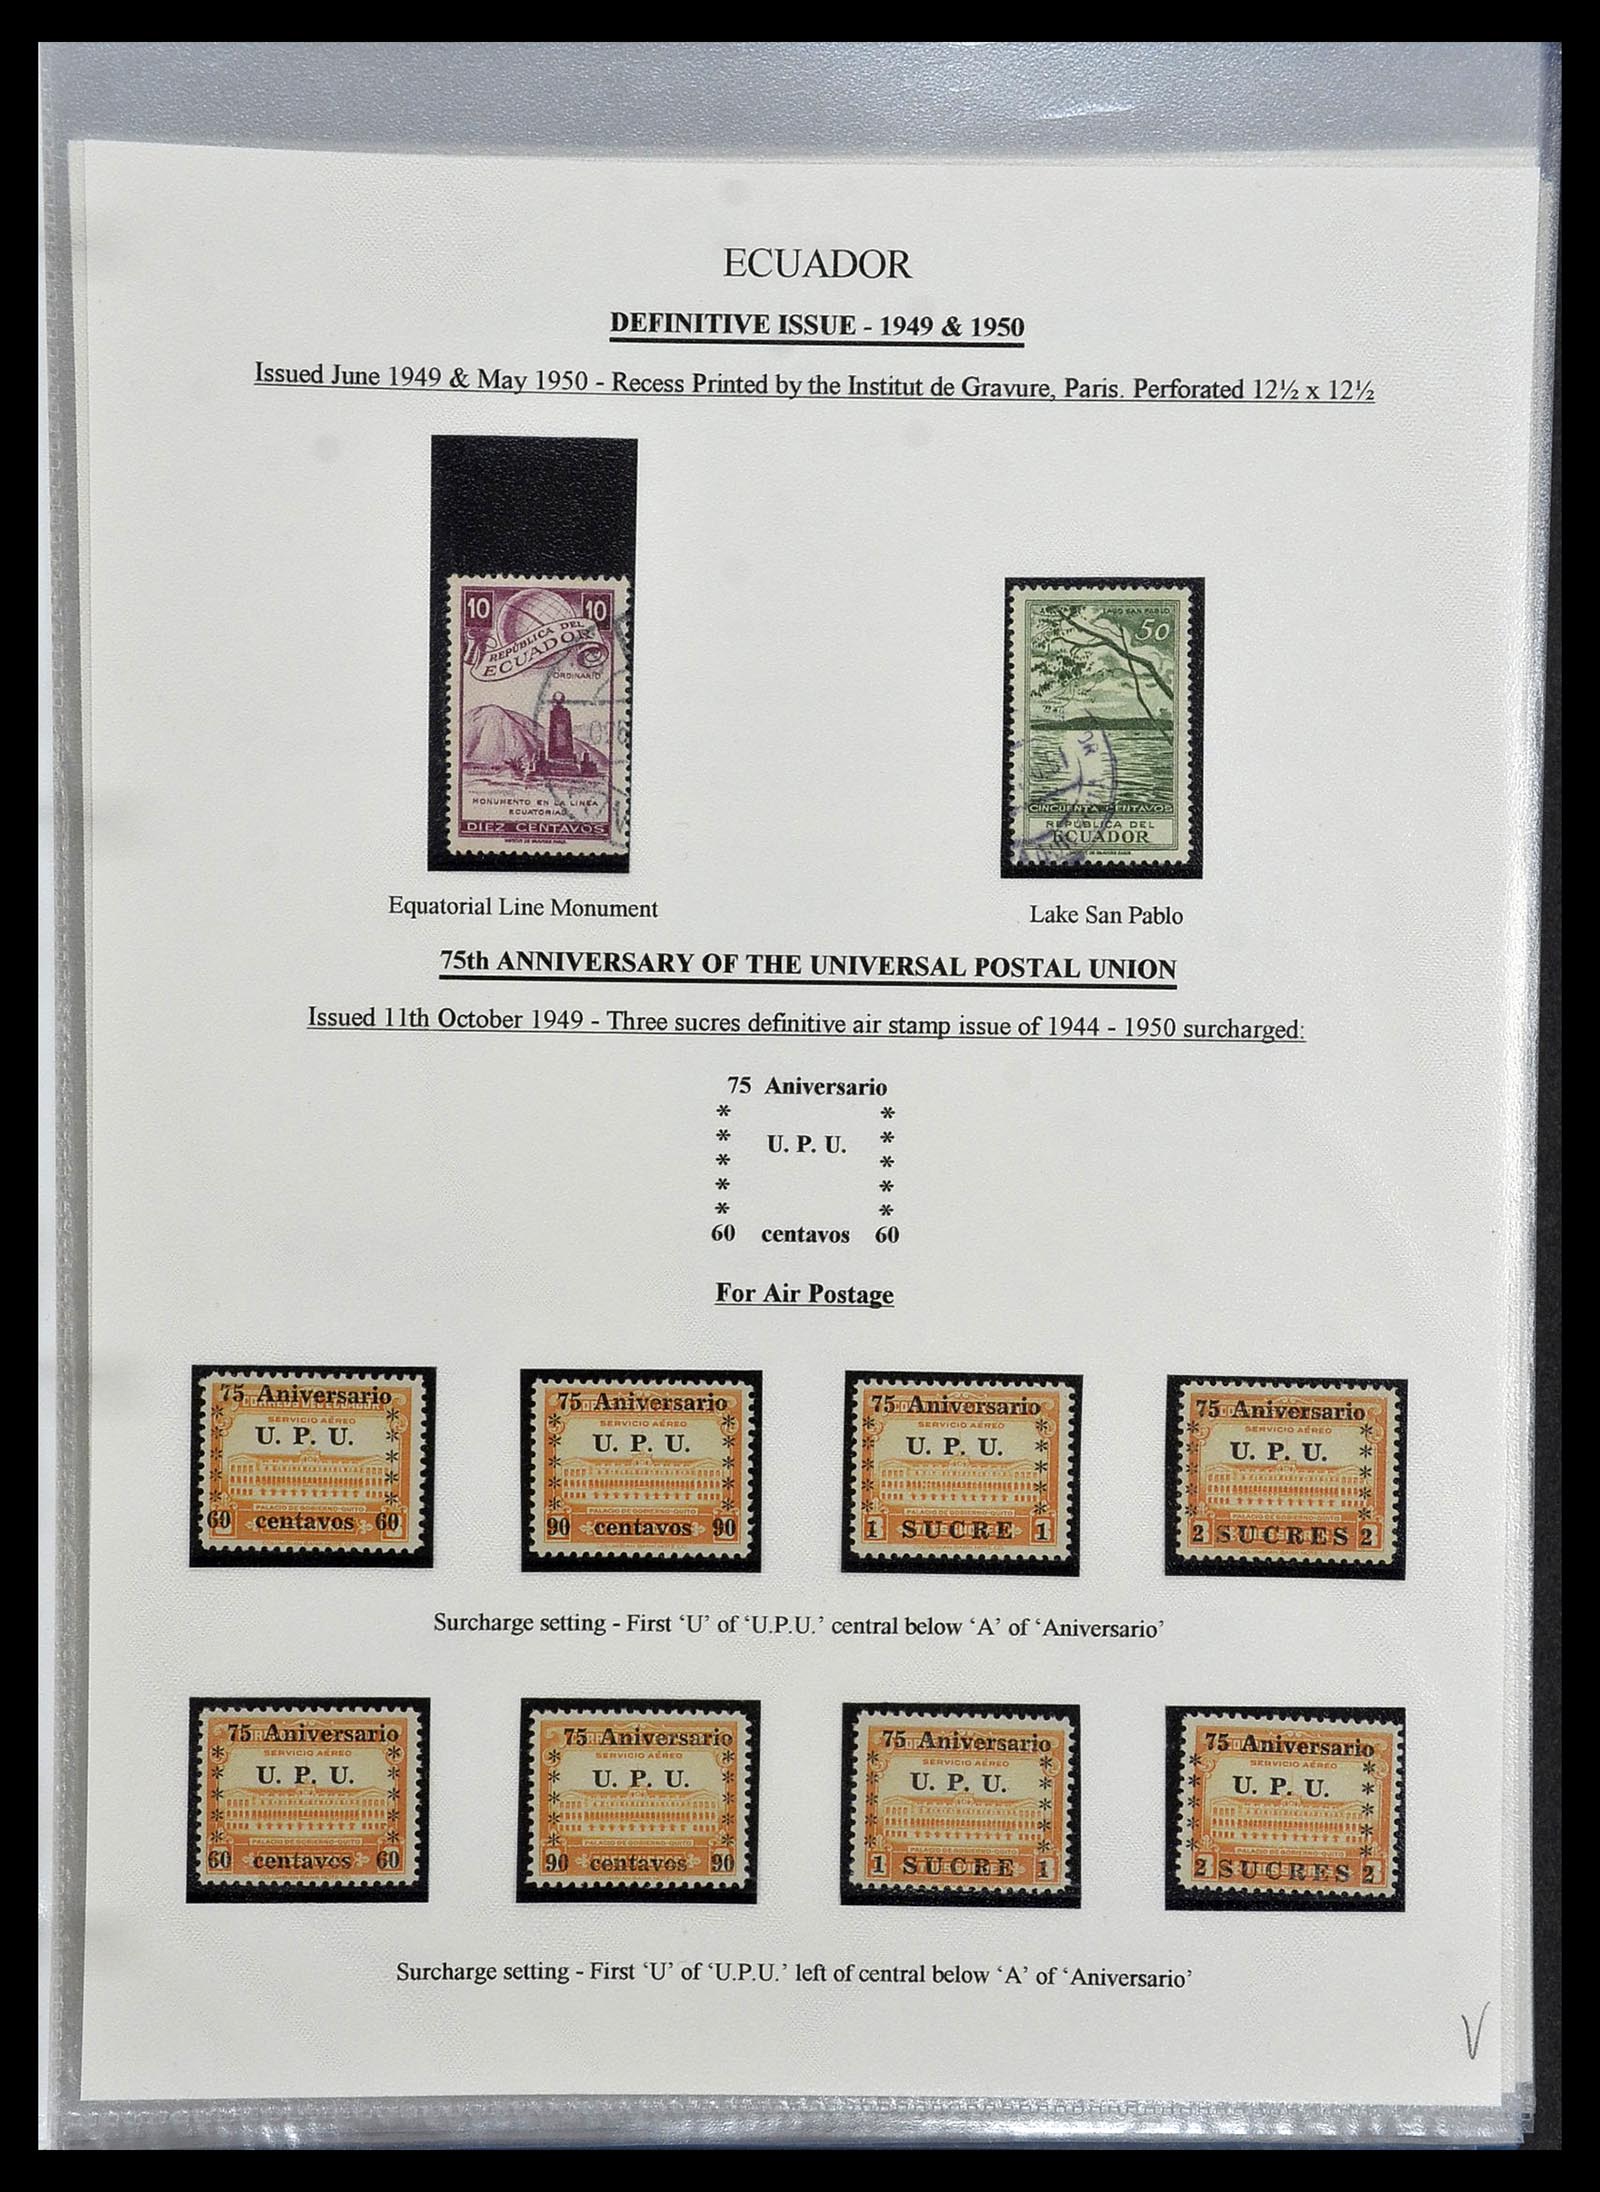 34523 103 - Stamp Collection 34523 Ecuador 1899-1952.